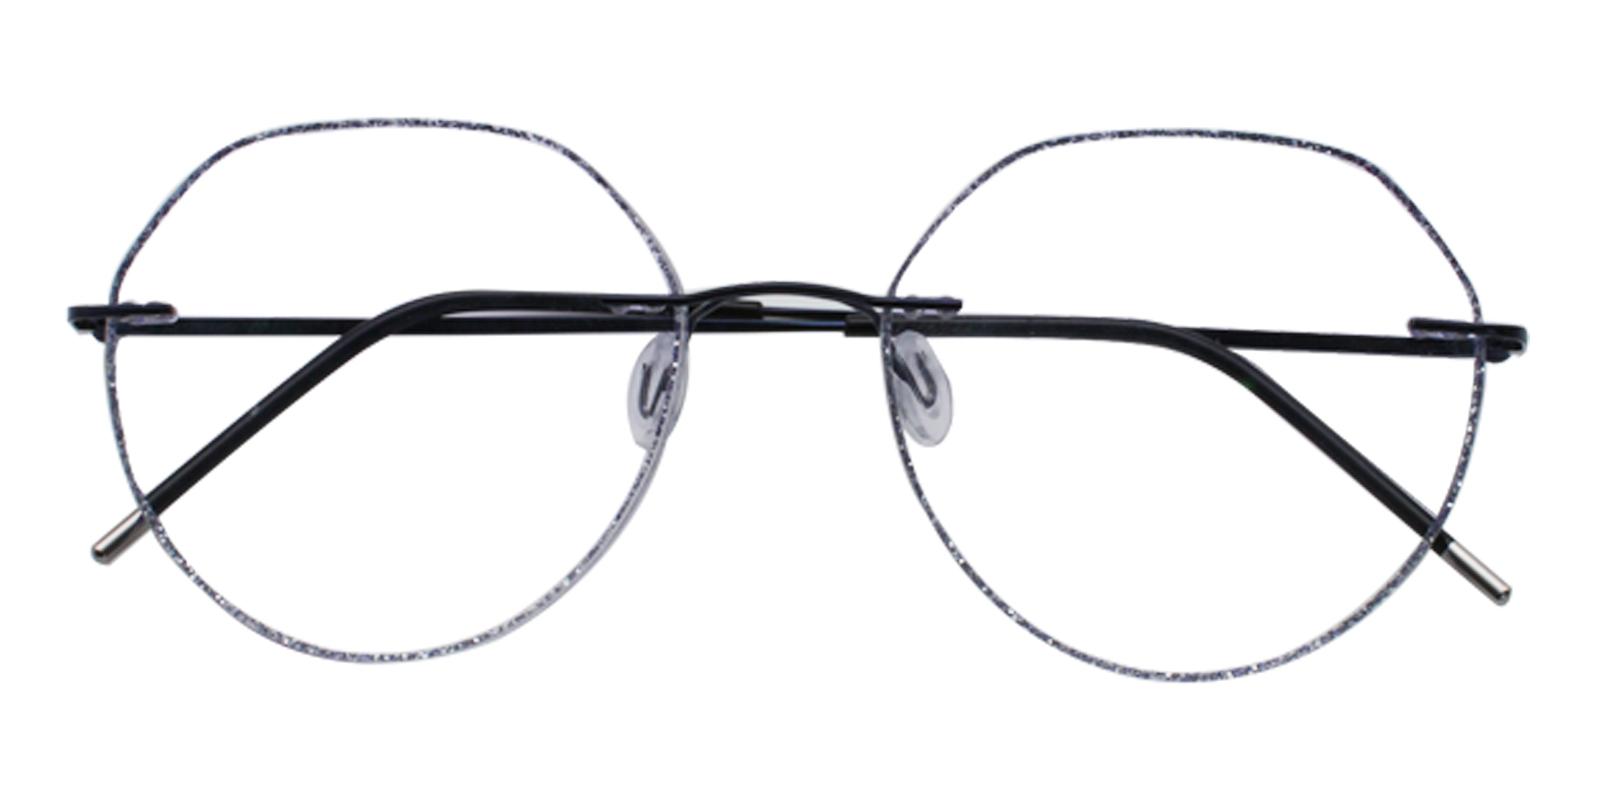 Piper Black Titanium Eyeglasses , NosePads Frames from ABBE Glasses